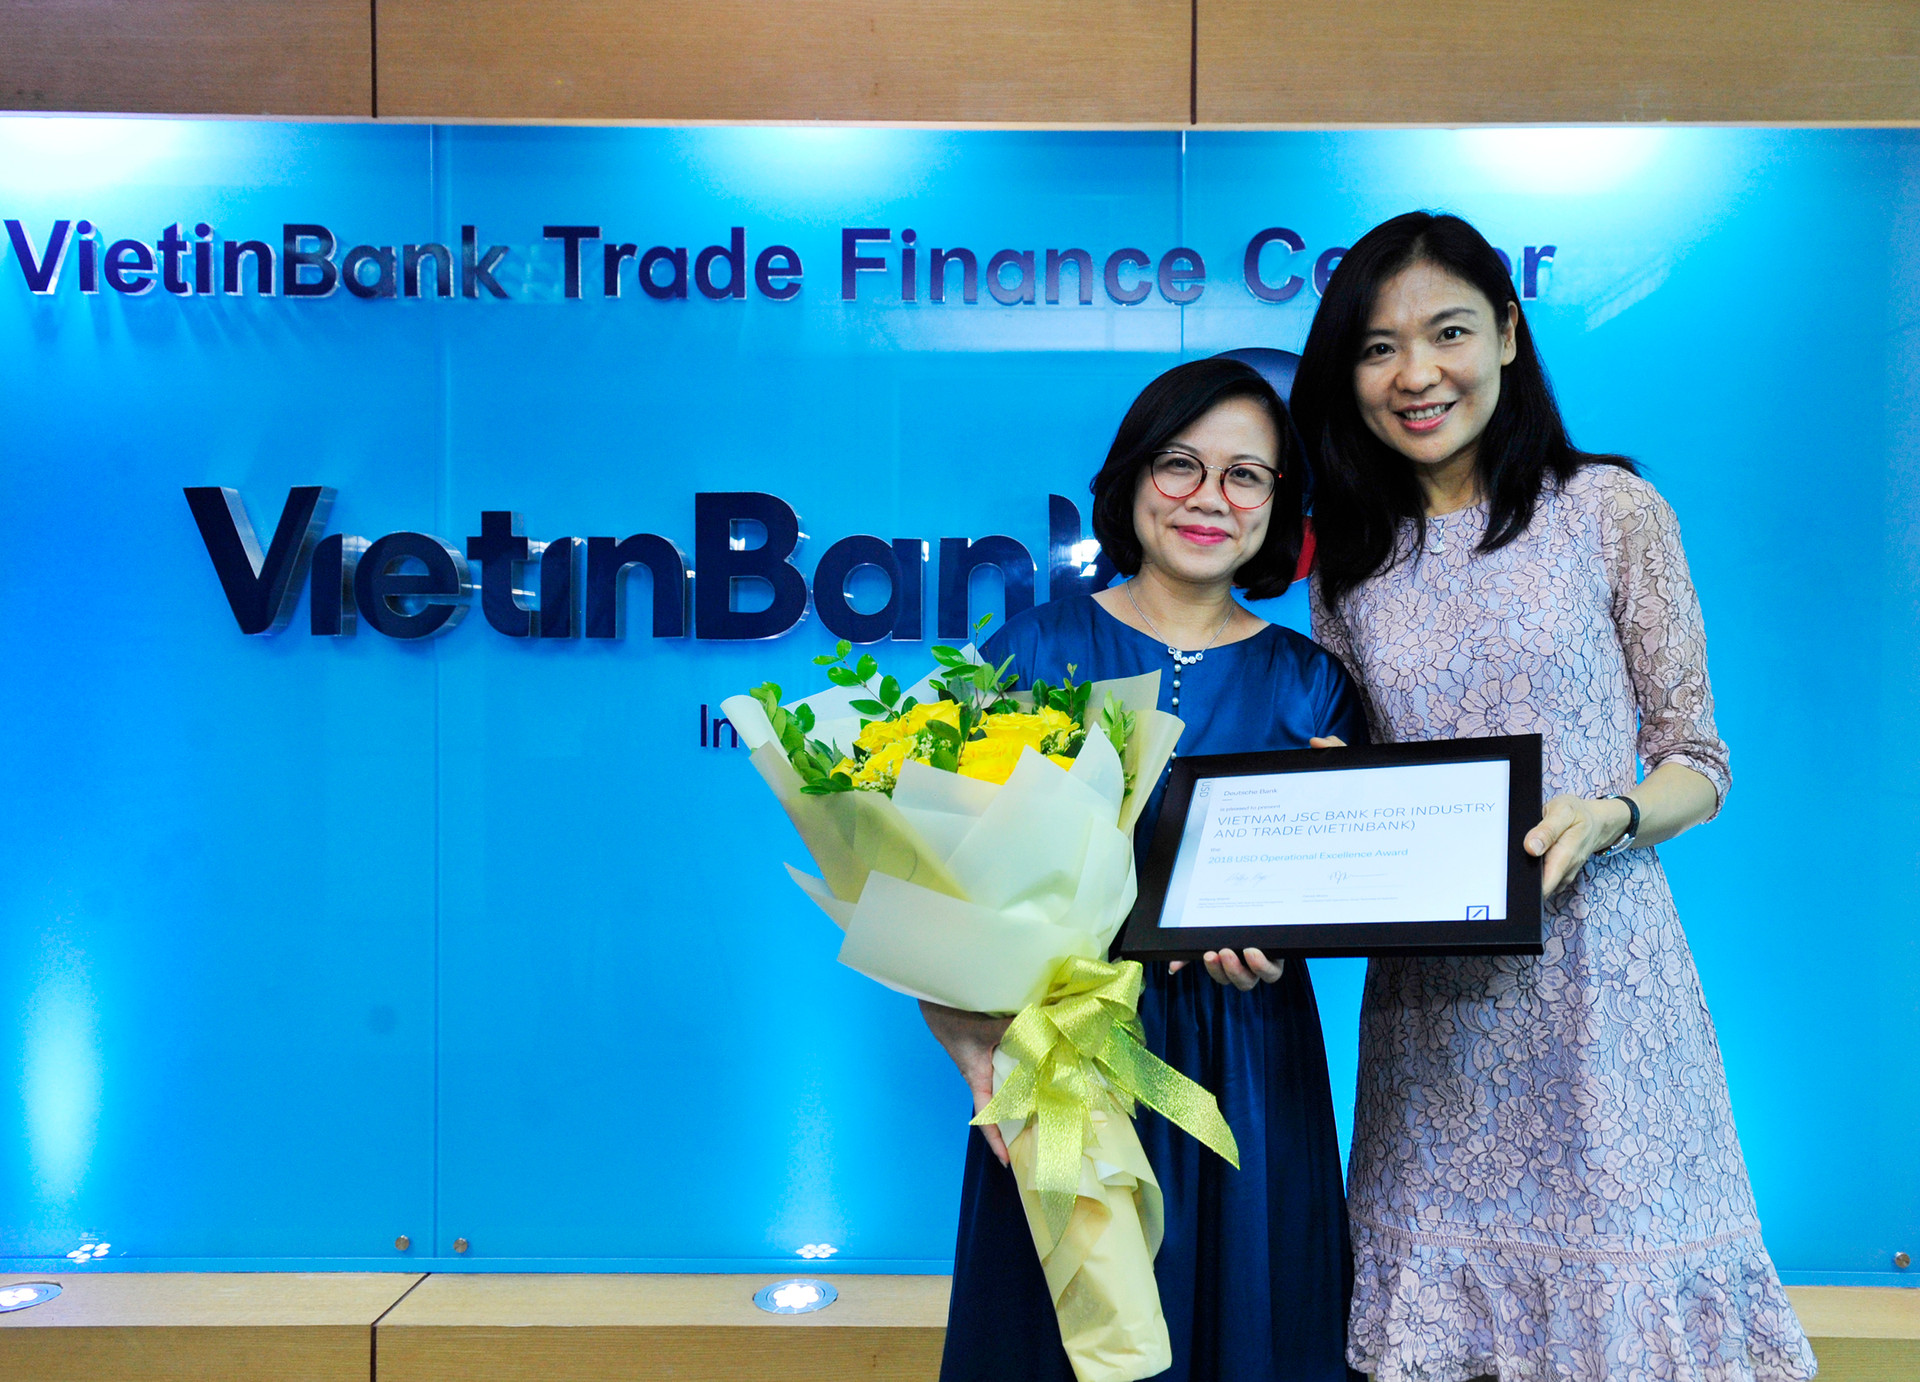 VietinBank: Ngân hàng có Chất lượng Thanh toán Quốc tế xuất sắc